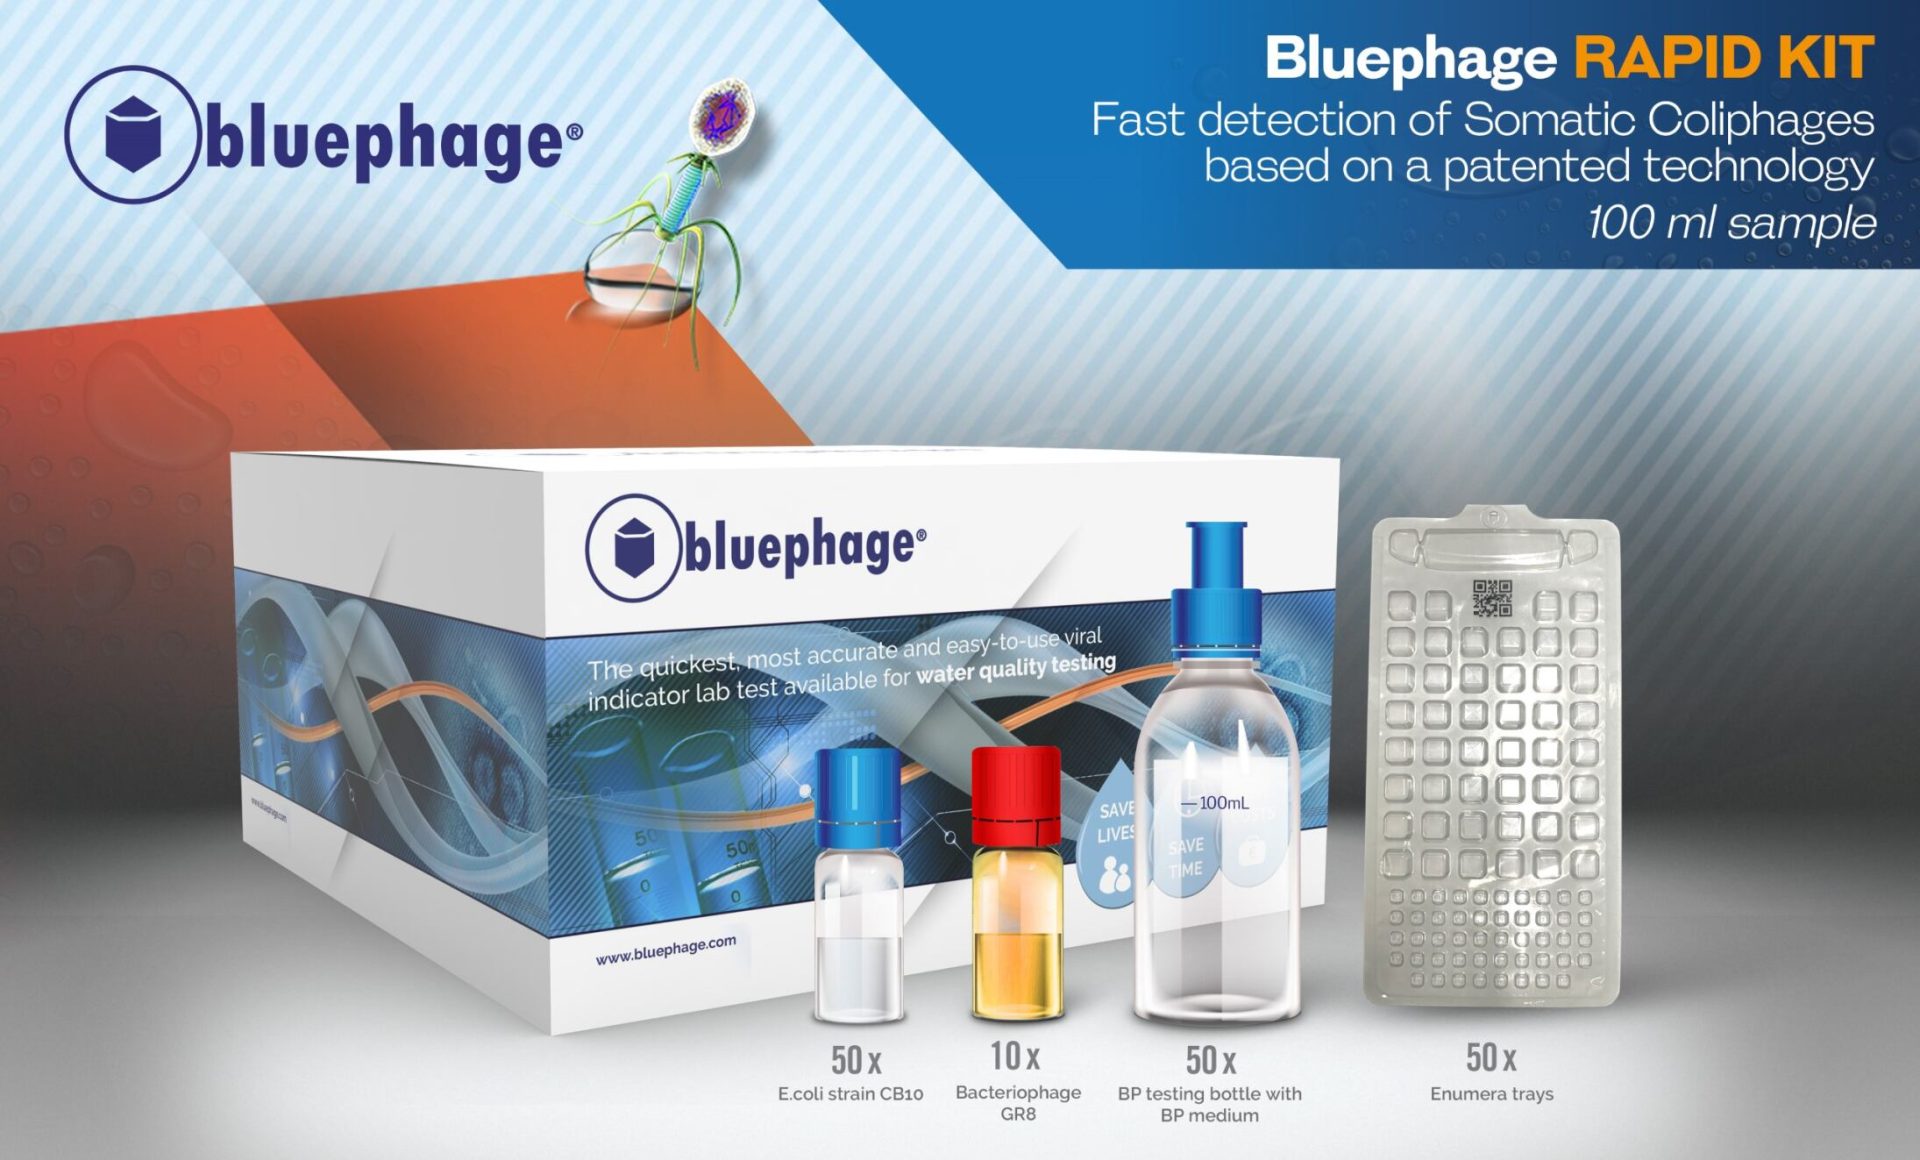 Bluephage Rapid Kit